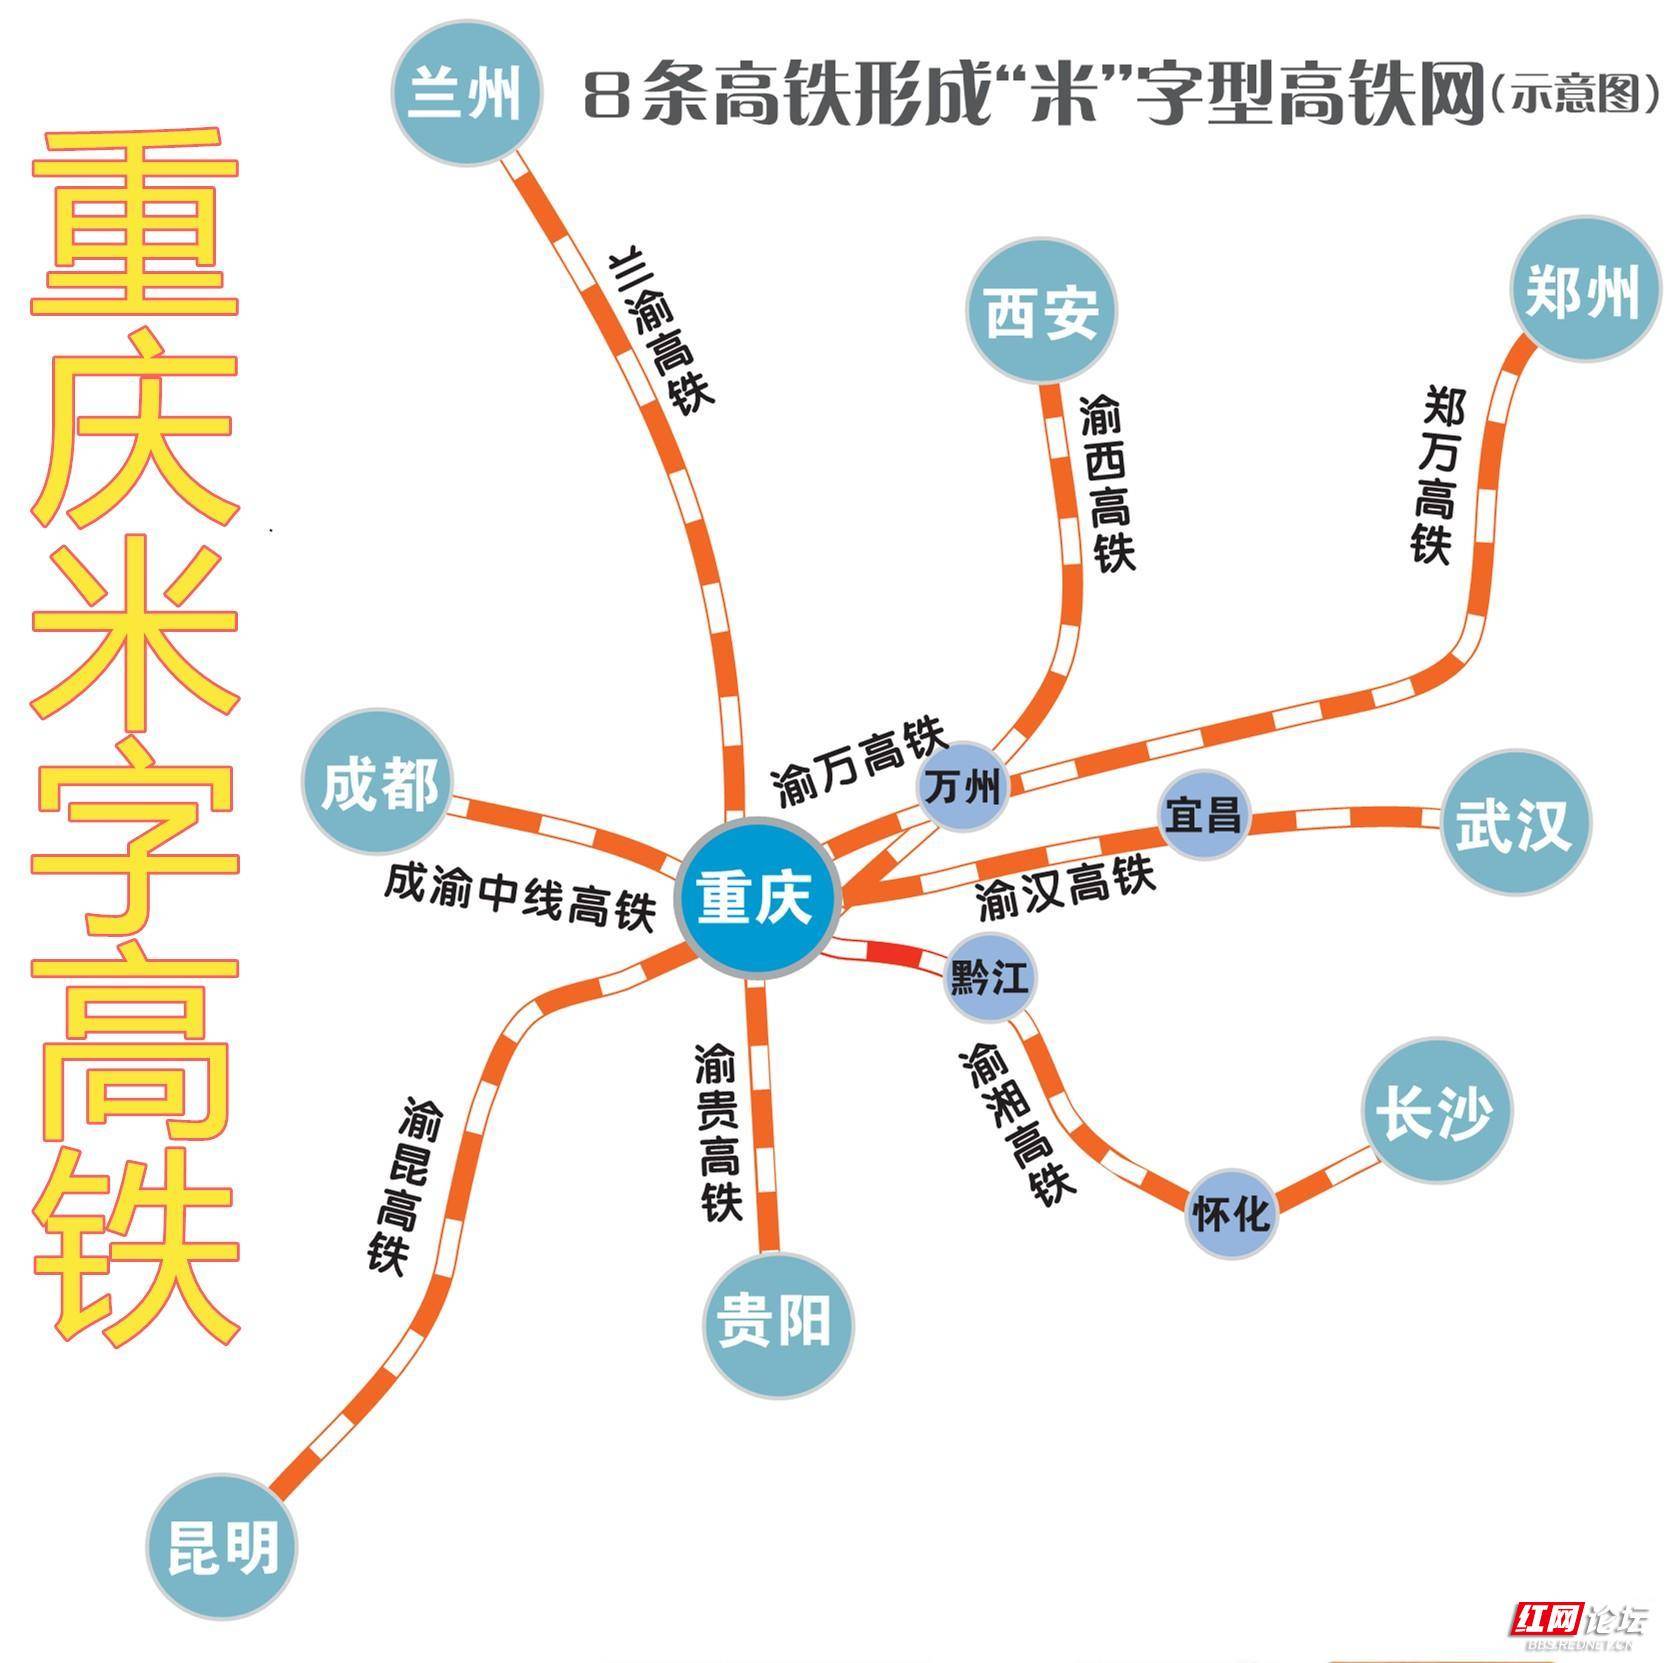 对此,冉慧建议,将渝湘高铁重庆市黔江,酉阳,秀山,湖南吉首段也纳入